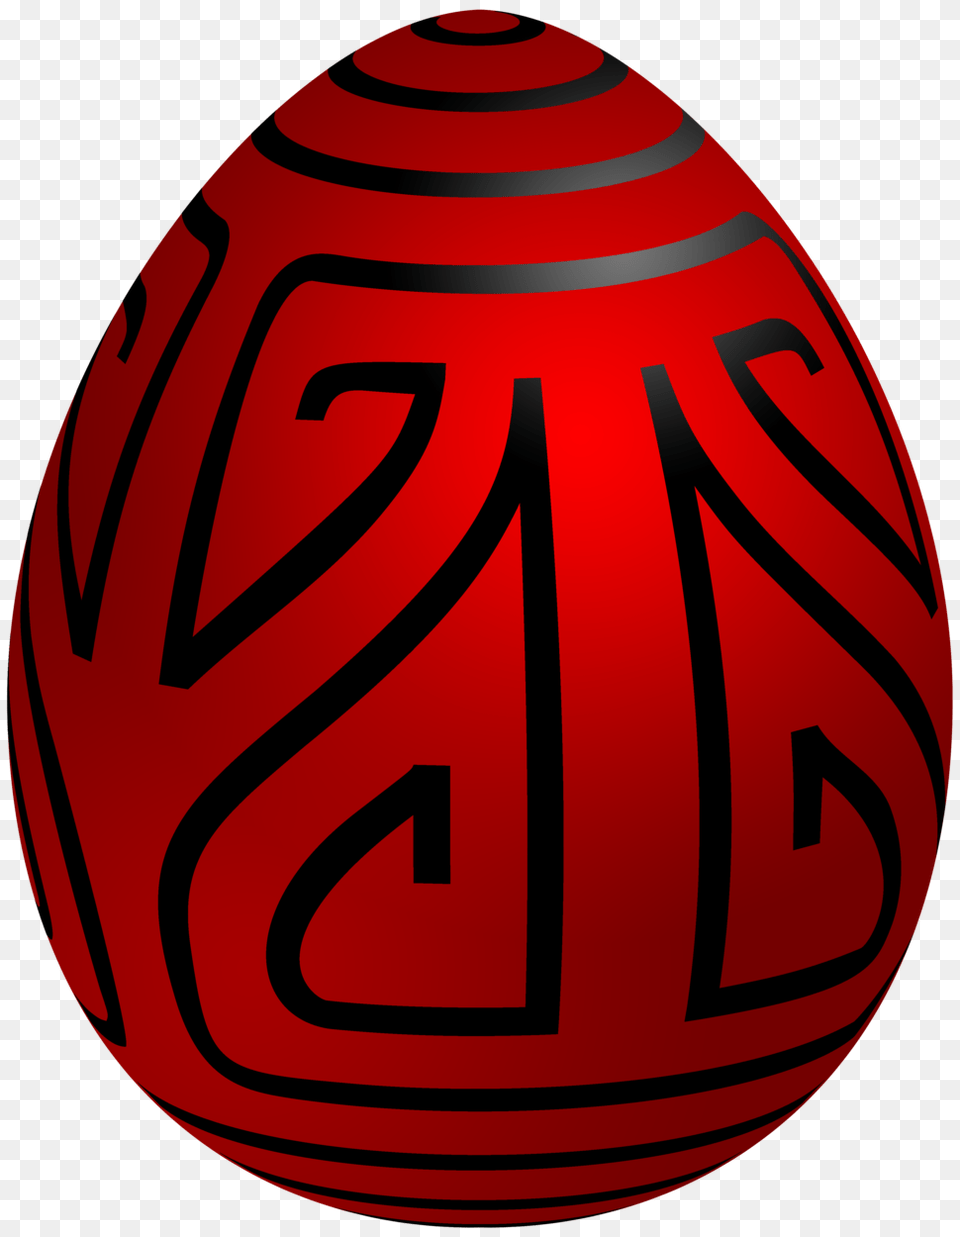 Easter Red Deco Egg Clip Art, Easter Egg, Food, Ammunition, Grenade Free Png